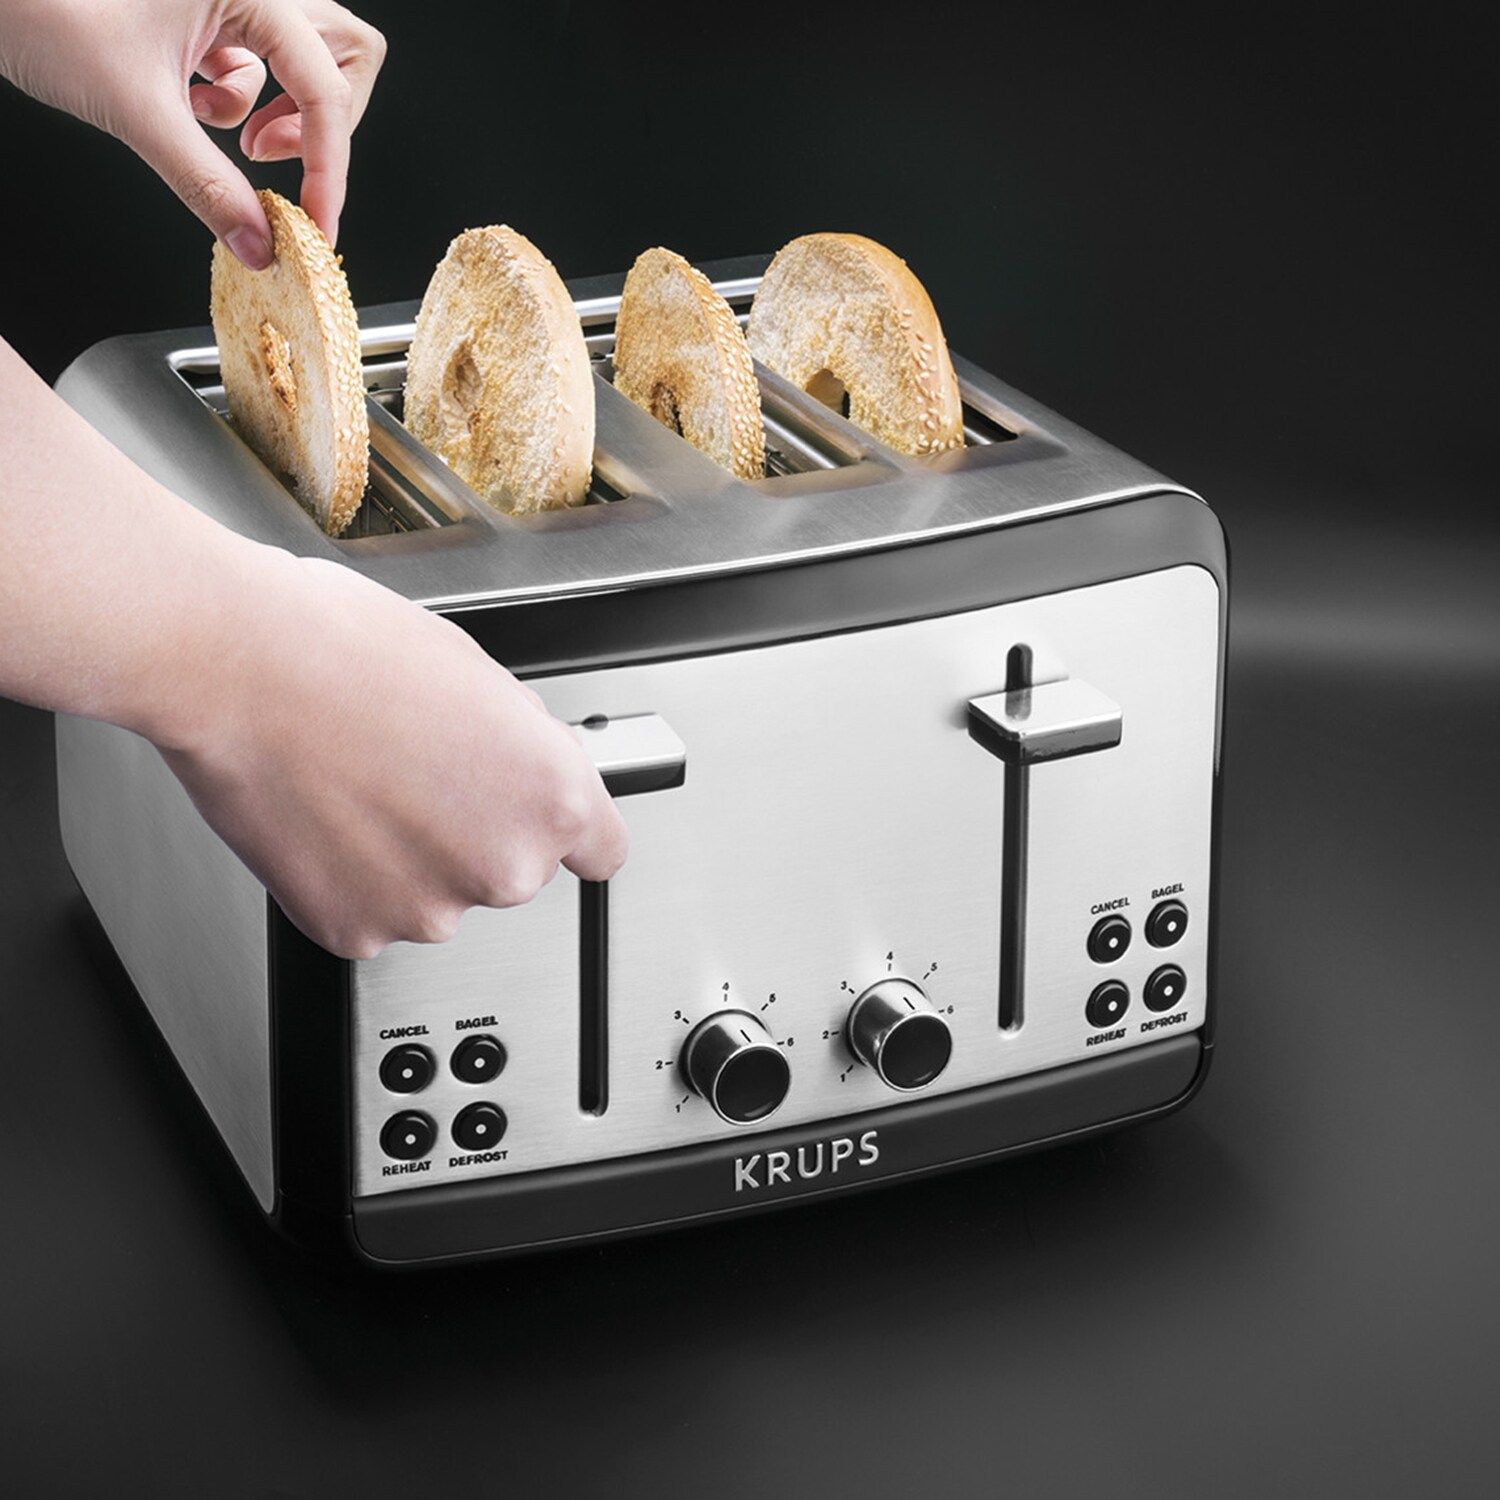 Grille-pain Krups Savoy : grille-pain uniforme avec six niveaux de brunissement